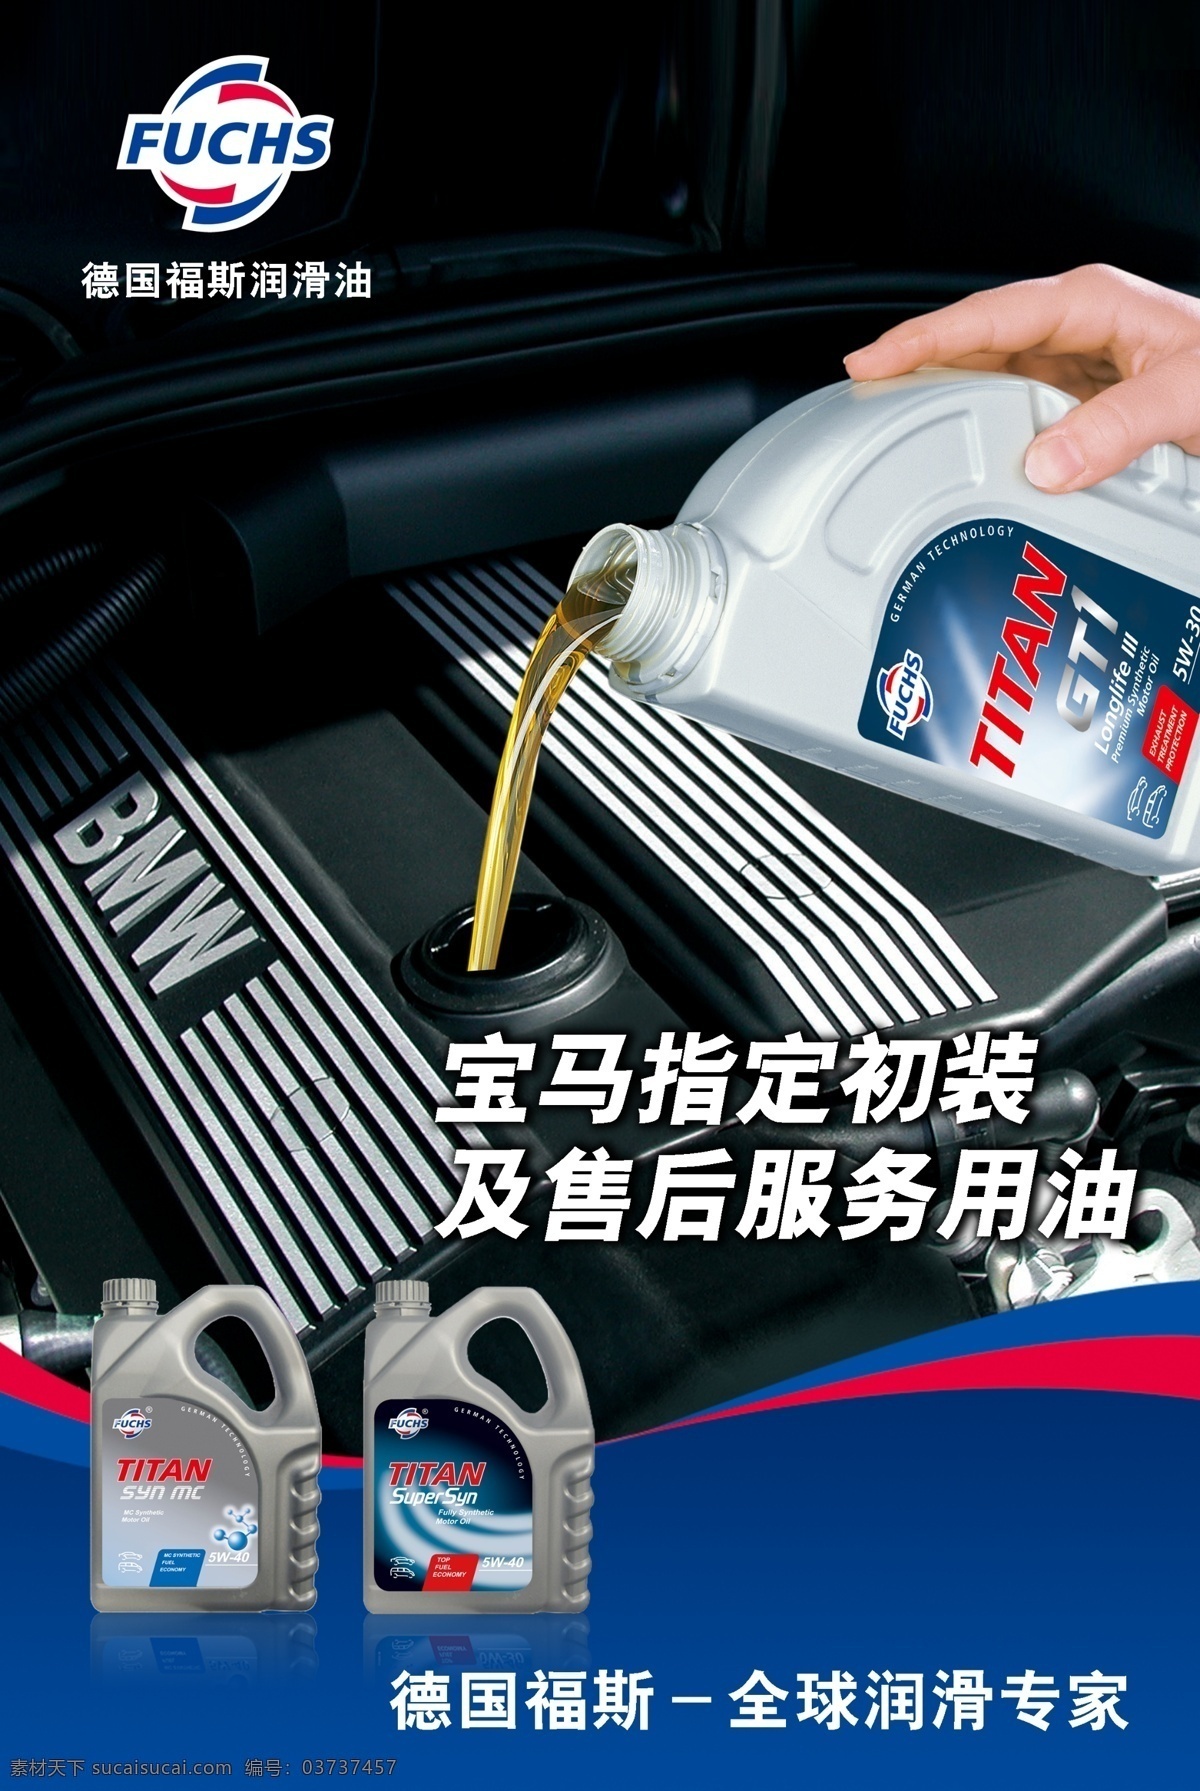 德国 福斯 润滑油 机油 汽车 标志 名牌 瓶子 宝马 展板 海报 国内广告设计 广告设计模板 源文件